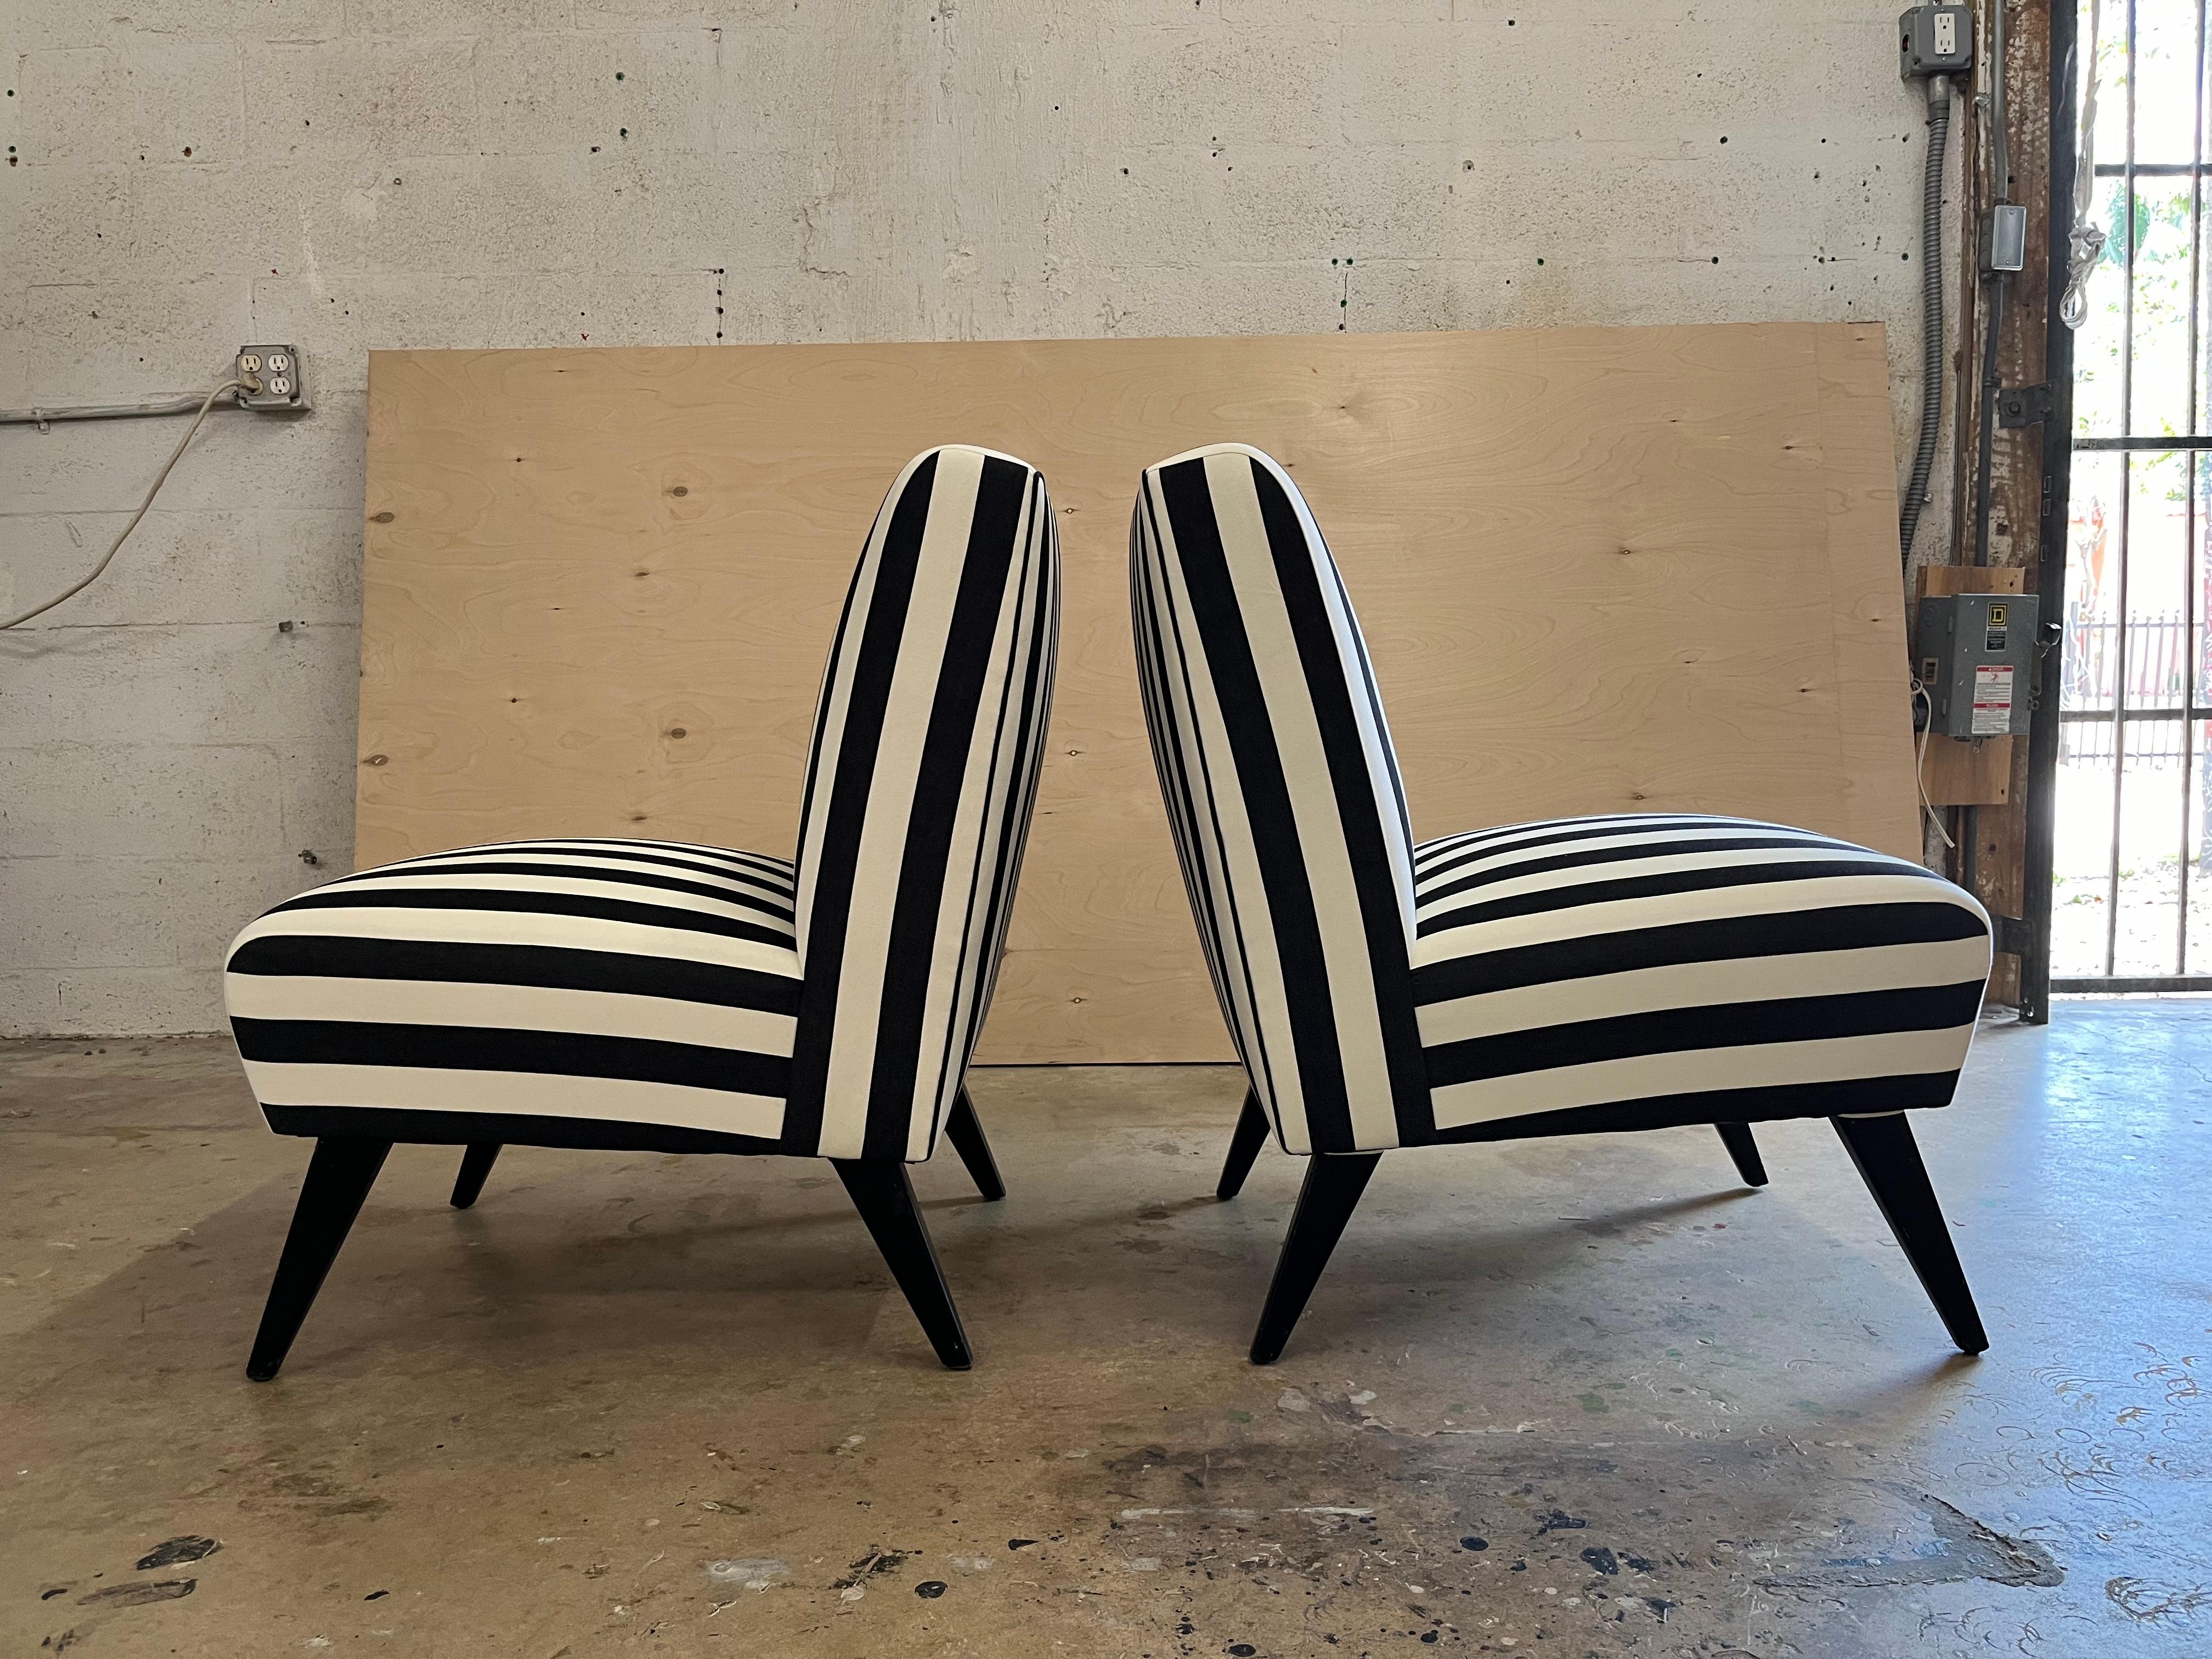 Paire de chaises longues des années 1950, pieds en bois noir et récemment retapissées en tissu de coton rayé noir et blanc. Les chaises sont dotées d'une sangle à ressorts d'origine. Prêt pour une nouvelle maison. 